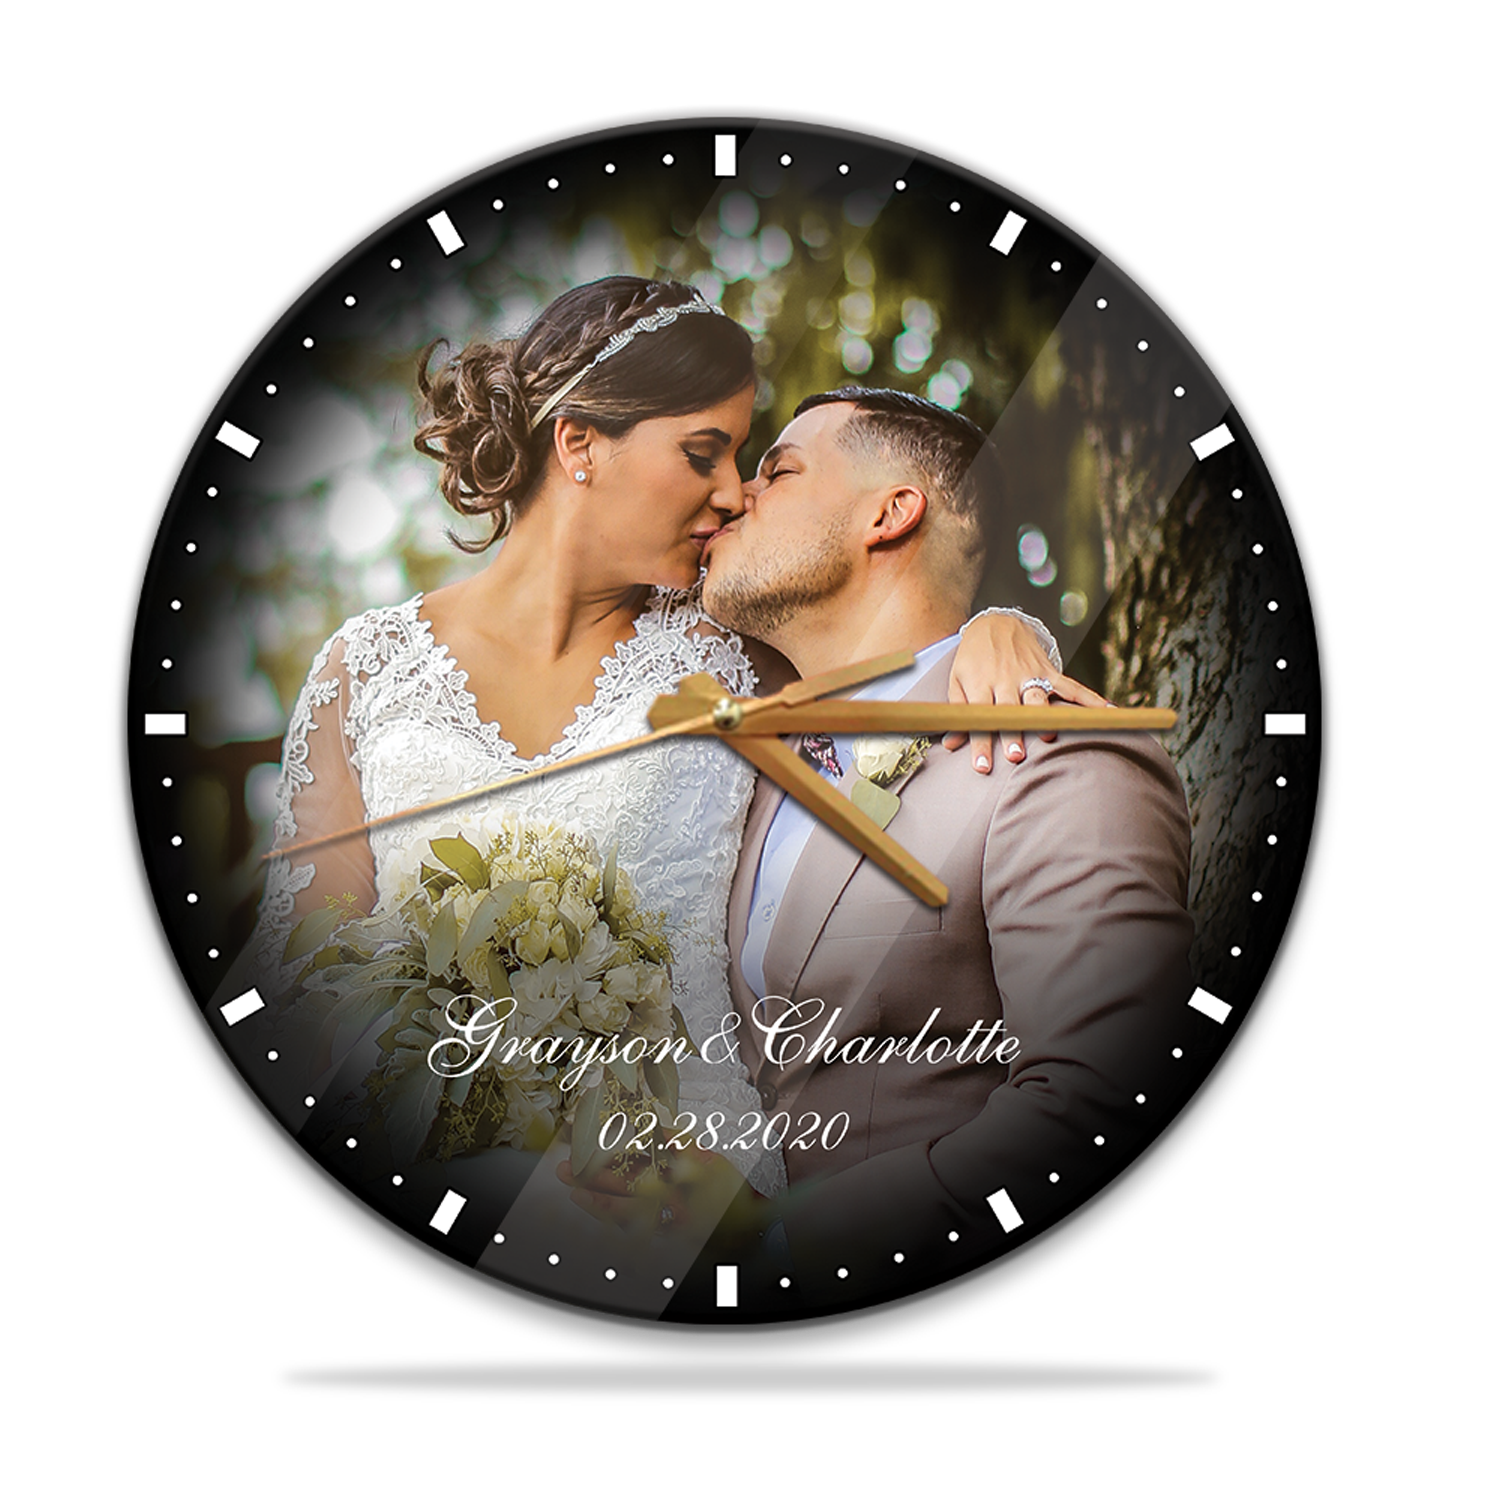 Custom Photo, Anniversary Gift, Wall Clock